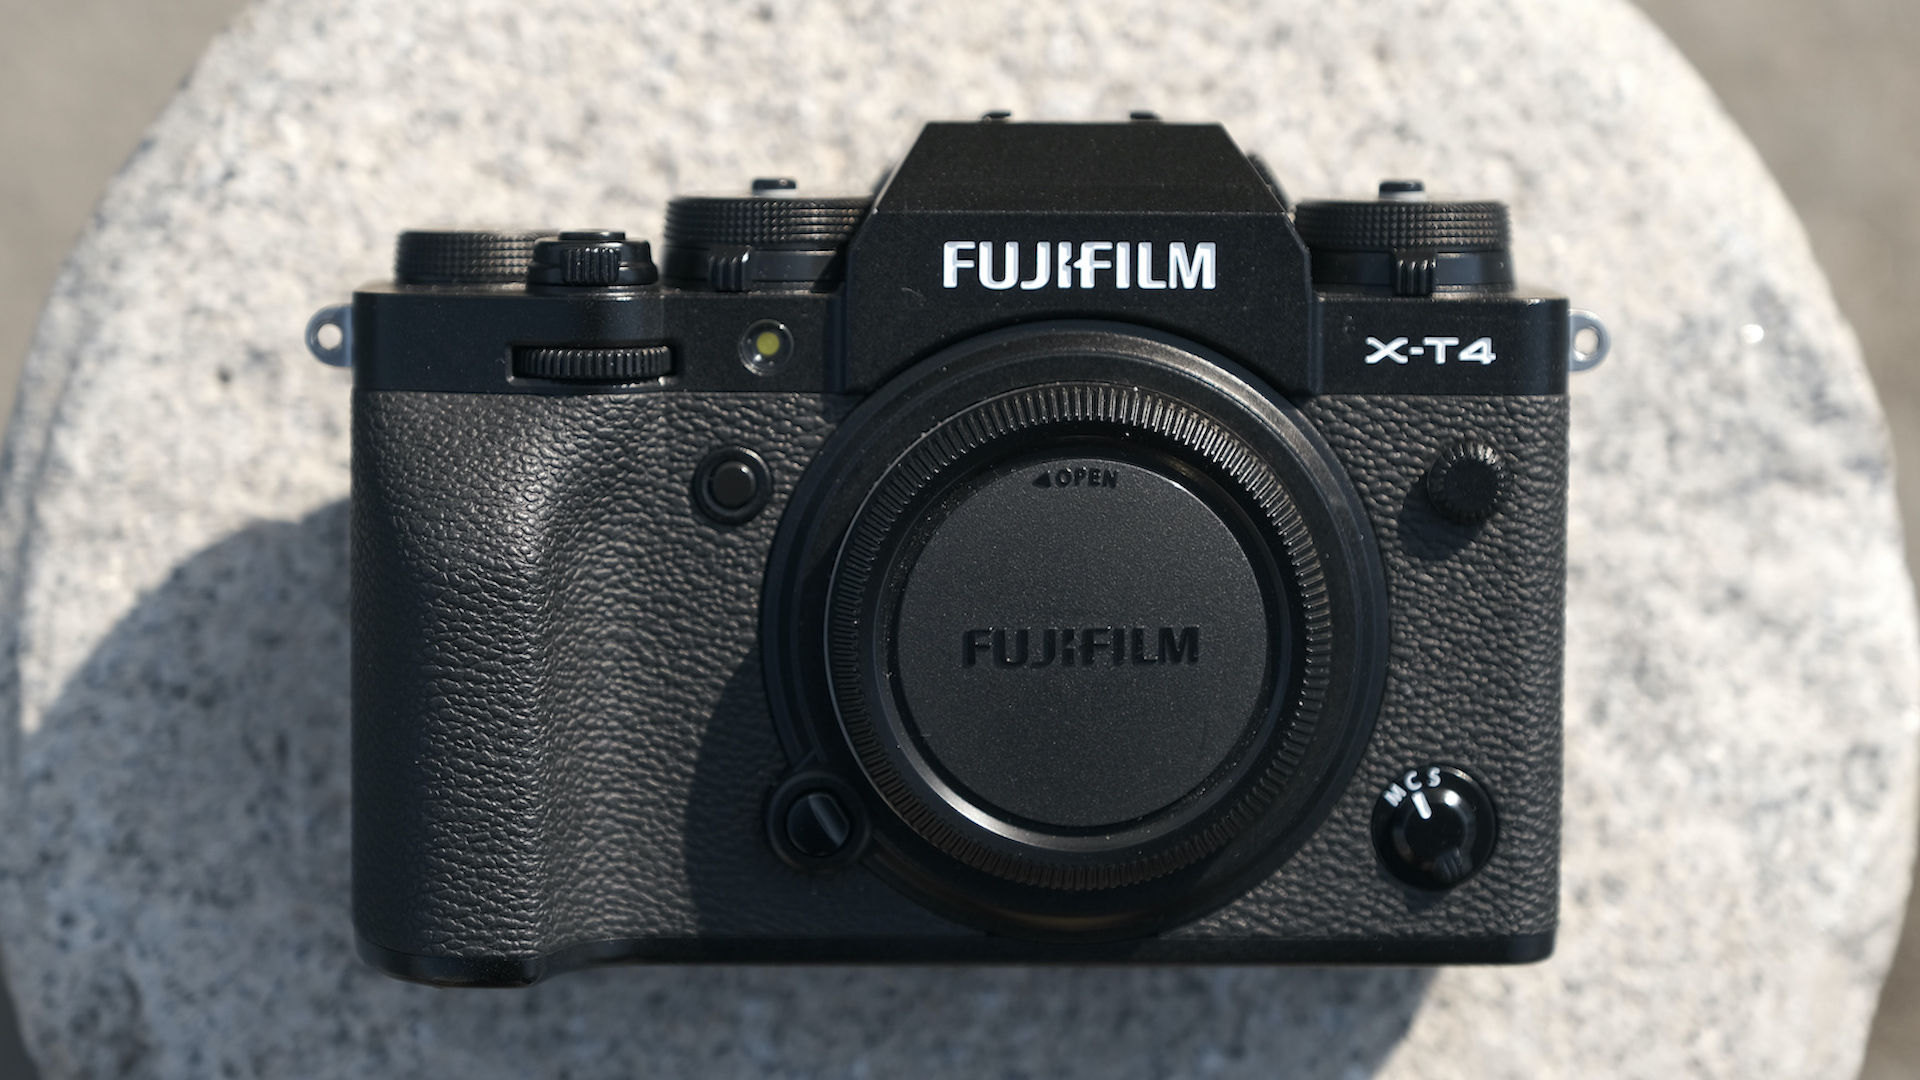  Buy a Fuji X-T4